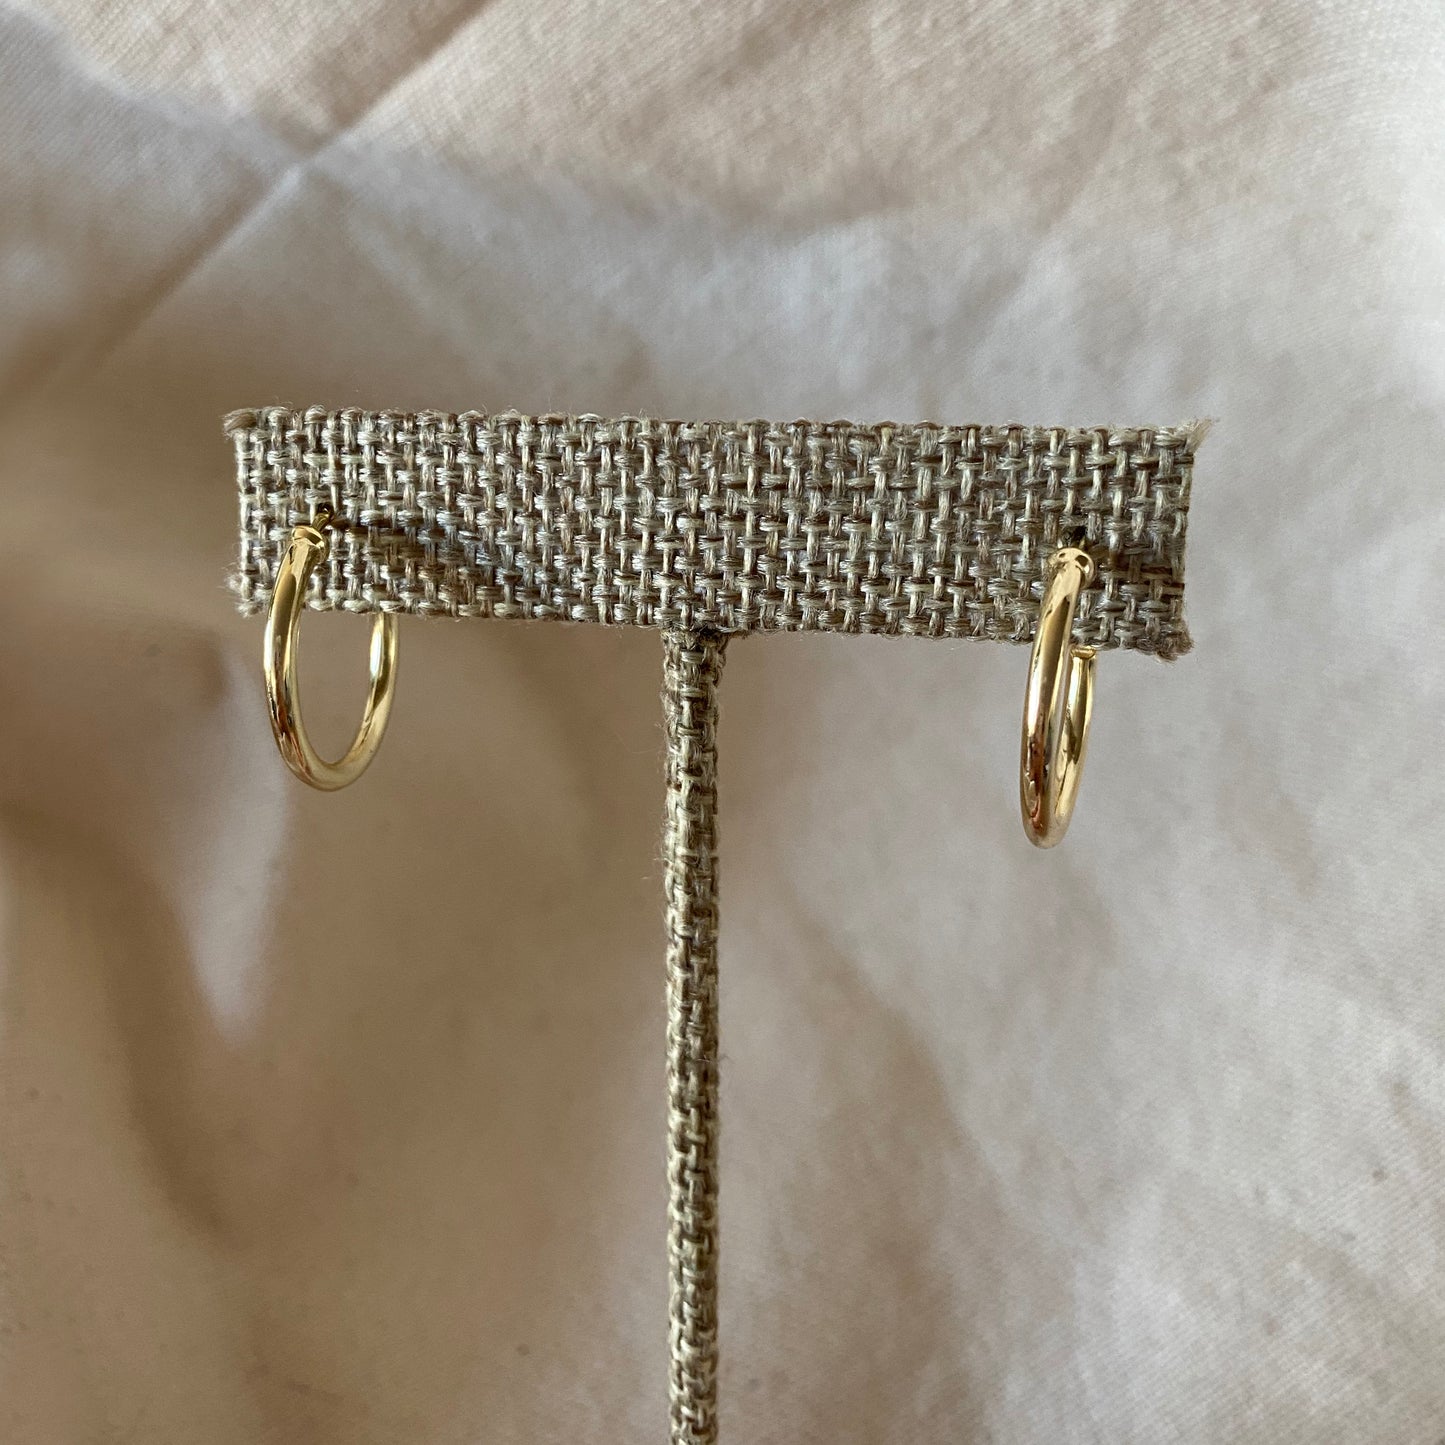 Sterling Silver Hoop Gold Earrings